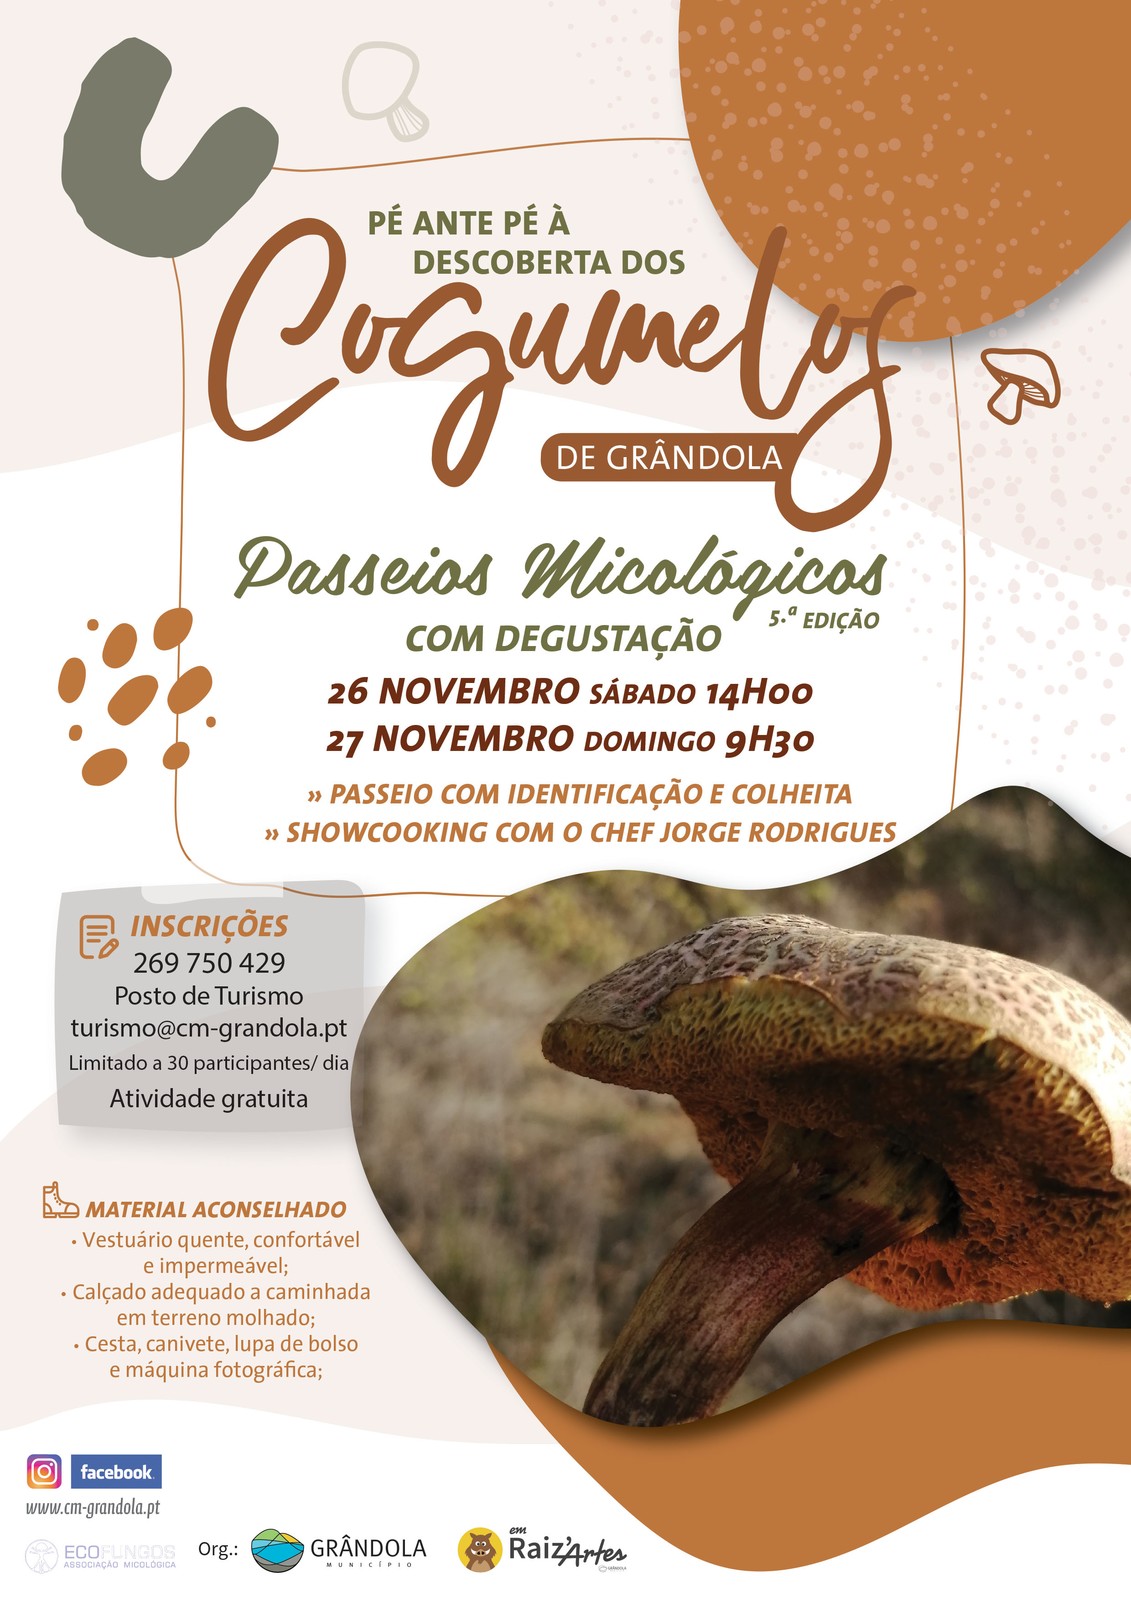 TURISMO | Passeio Micológico “Pé ante pé, à descoberta dos cogumelos de Grândola”